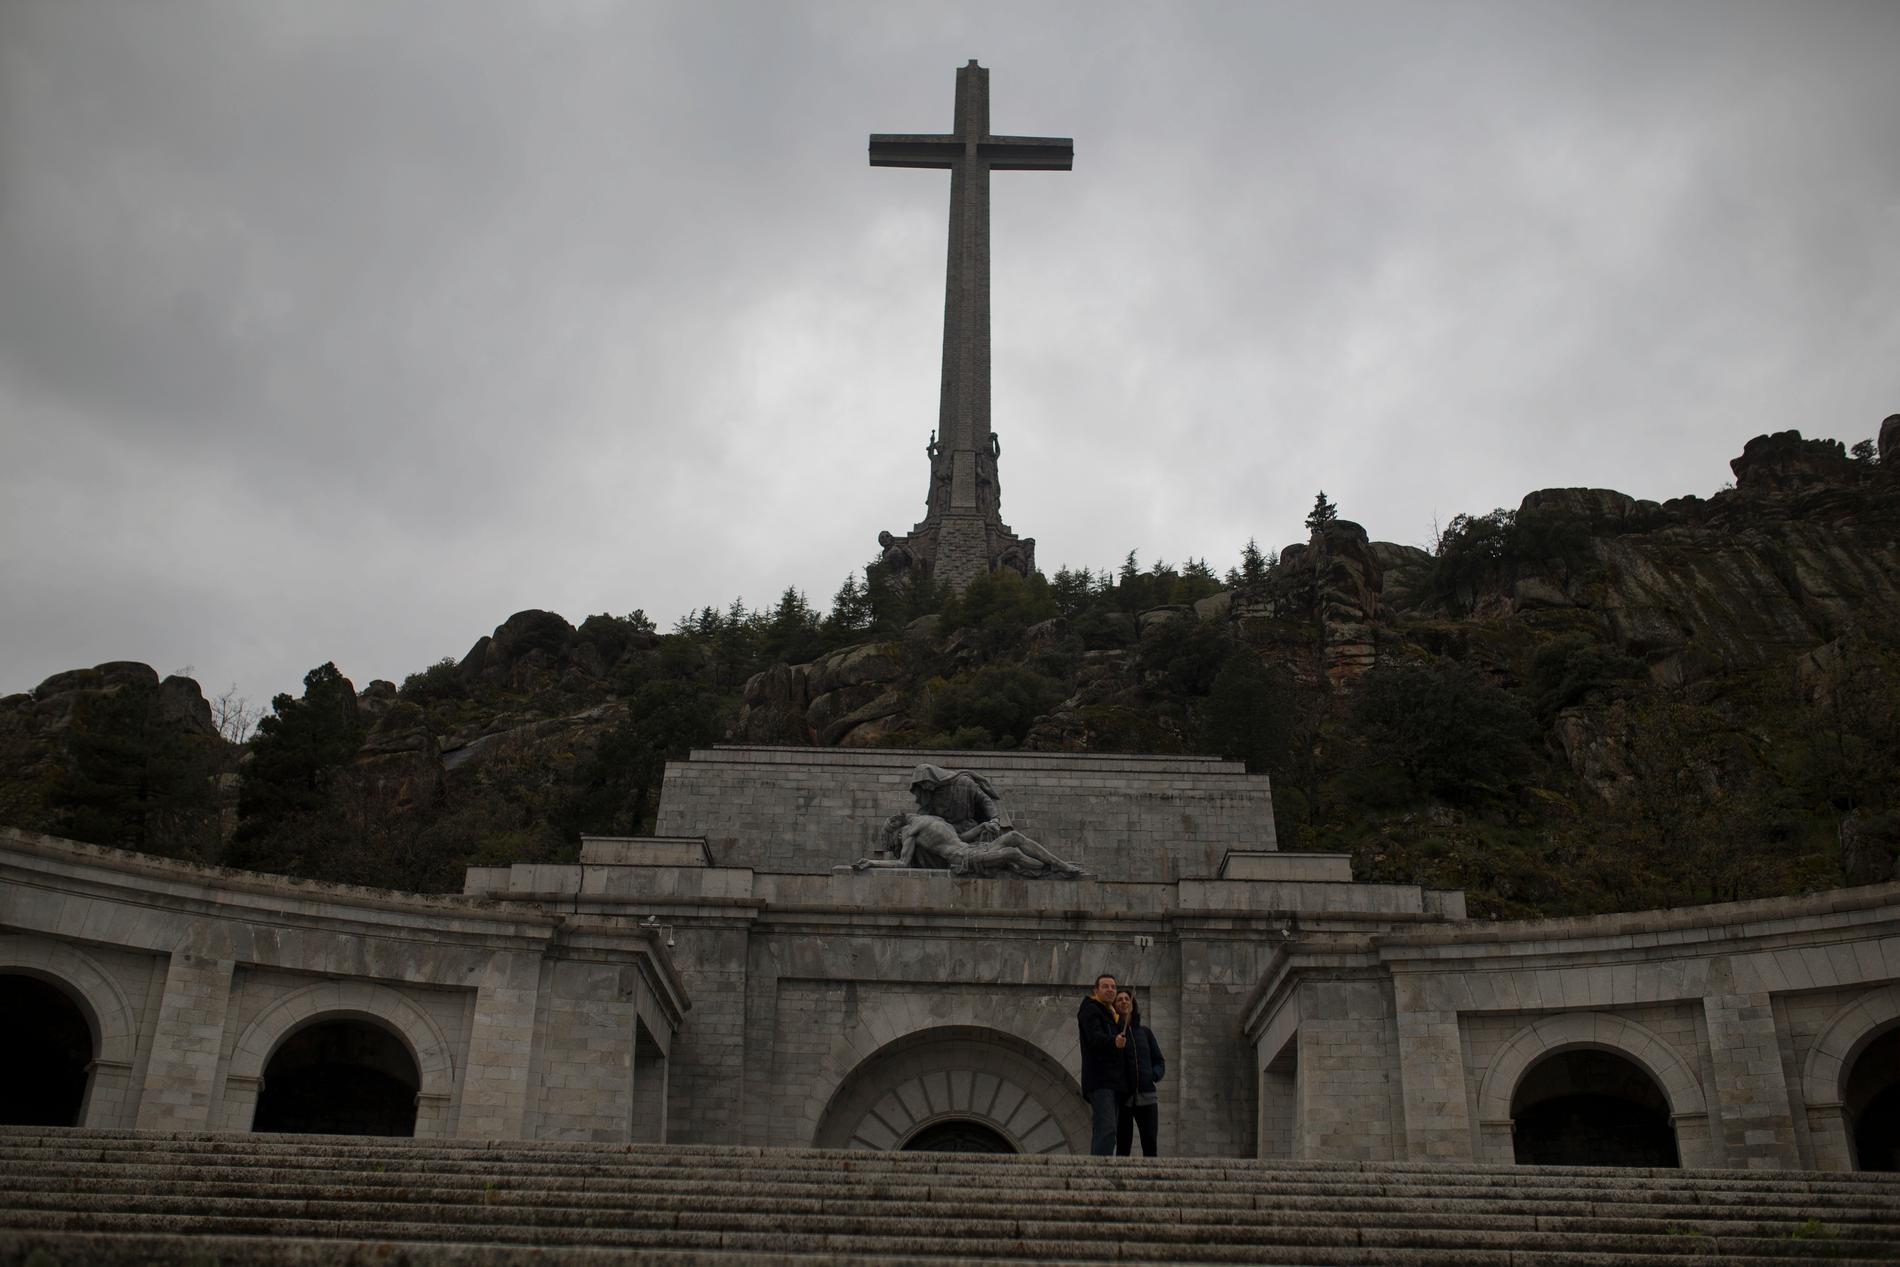 Turister besöker De fallnas dal utanför Madrid. Diktatorn Francisco Franco lät på 50-talet färdigställa ett gravmonument över inbördeskrigets offer samt en kyrka och ett kloster. Han ligger begravd inne i den utsprängda basilikan under ett 150 meter högt kors som syns på milsvida avstånd. Arkivbild.